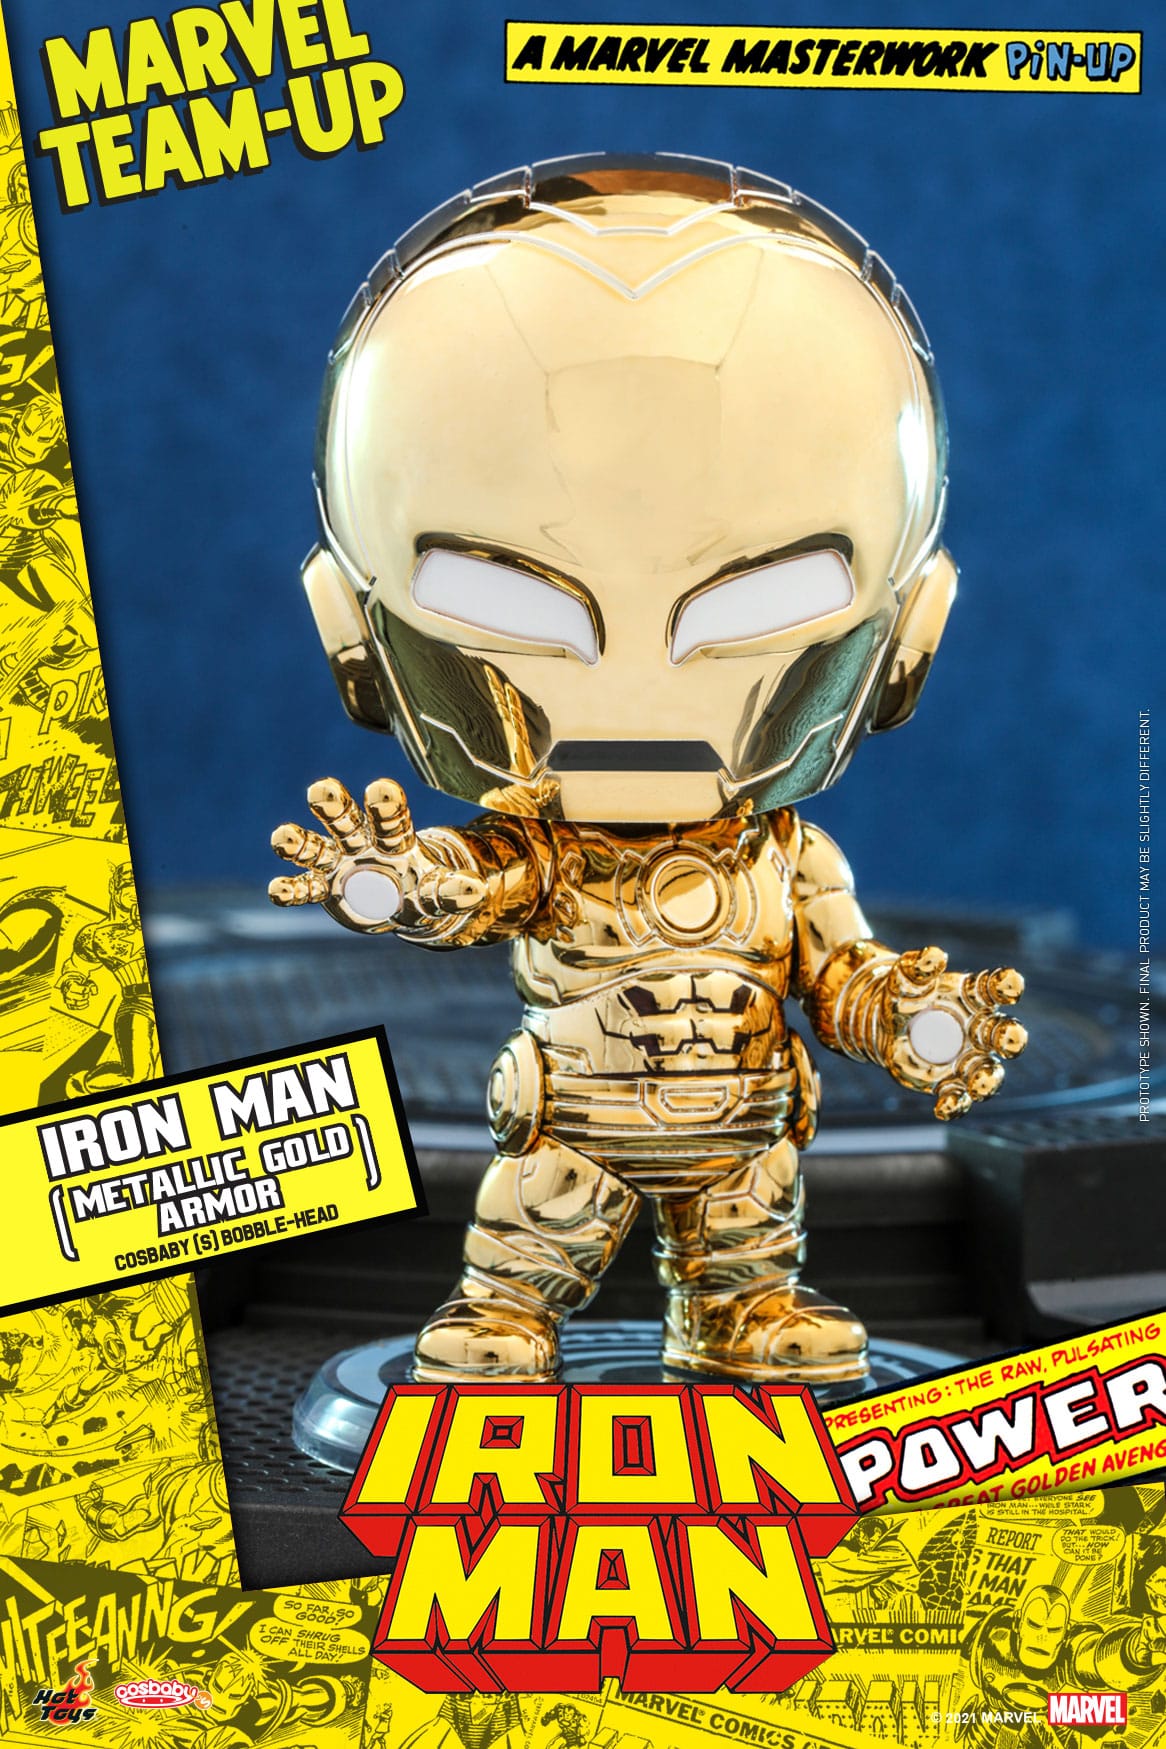 Iron Man (kovinski zlati oklep) Cosbaby